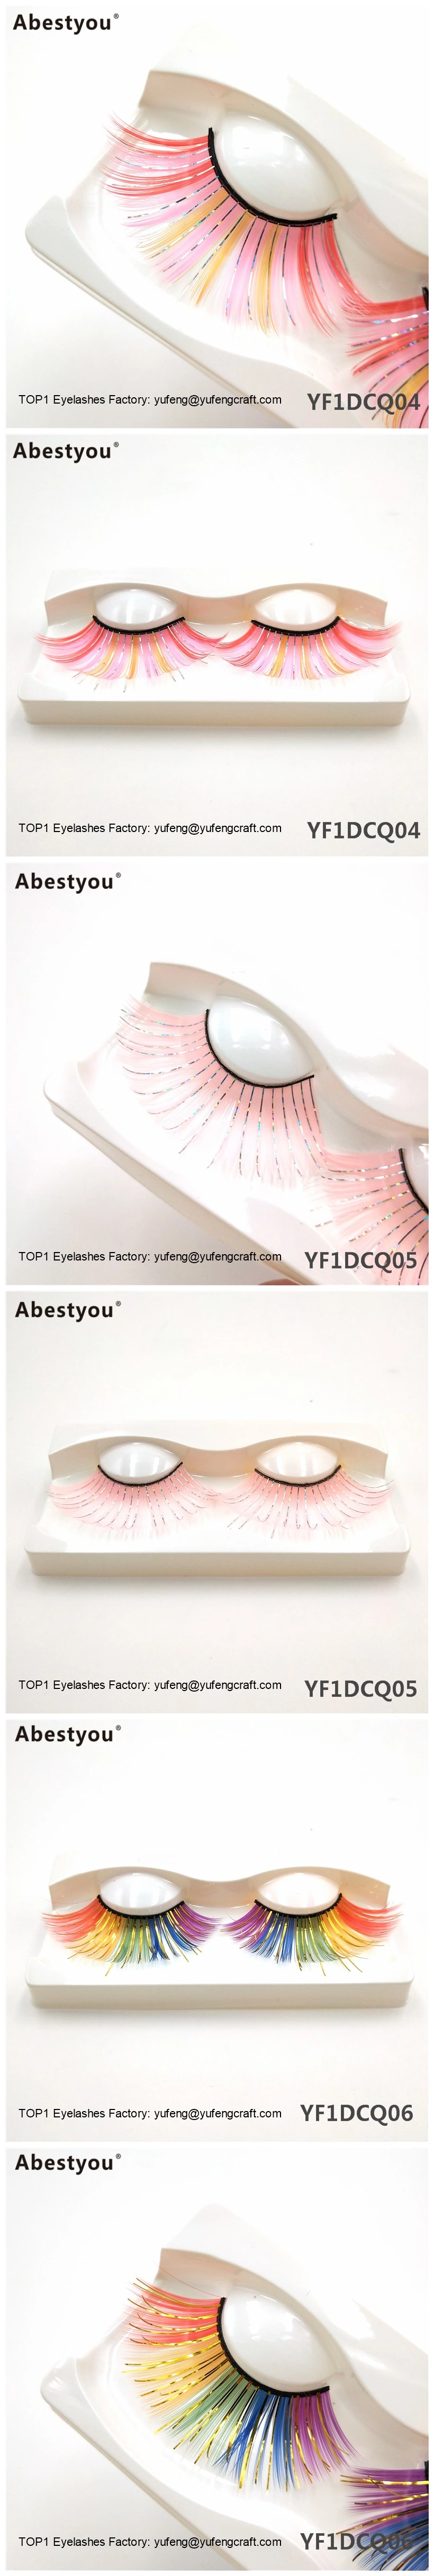 Abestyou Colorful Eyelashes for Holidays